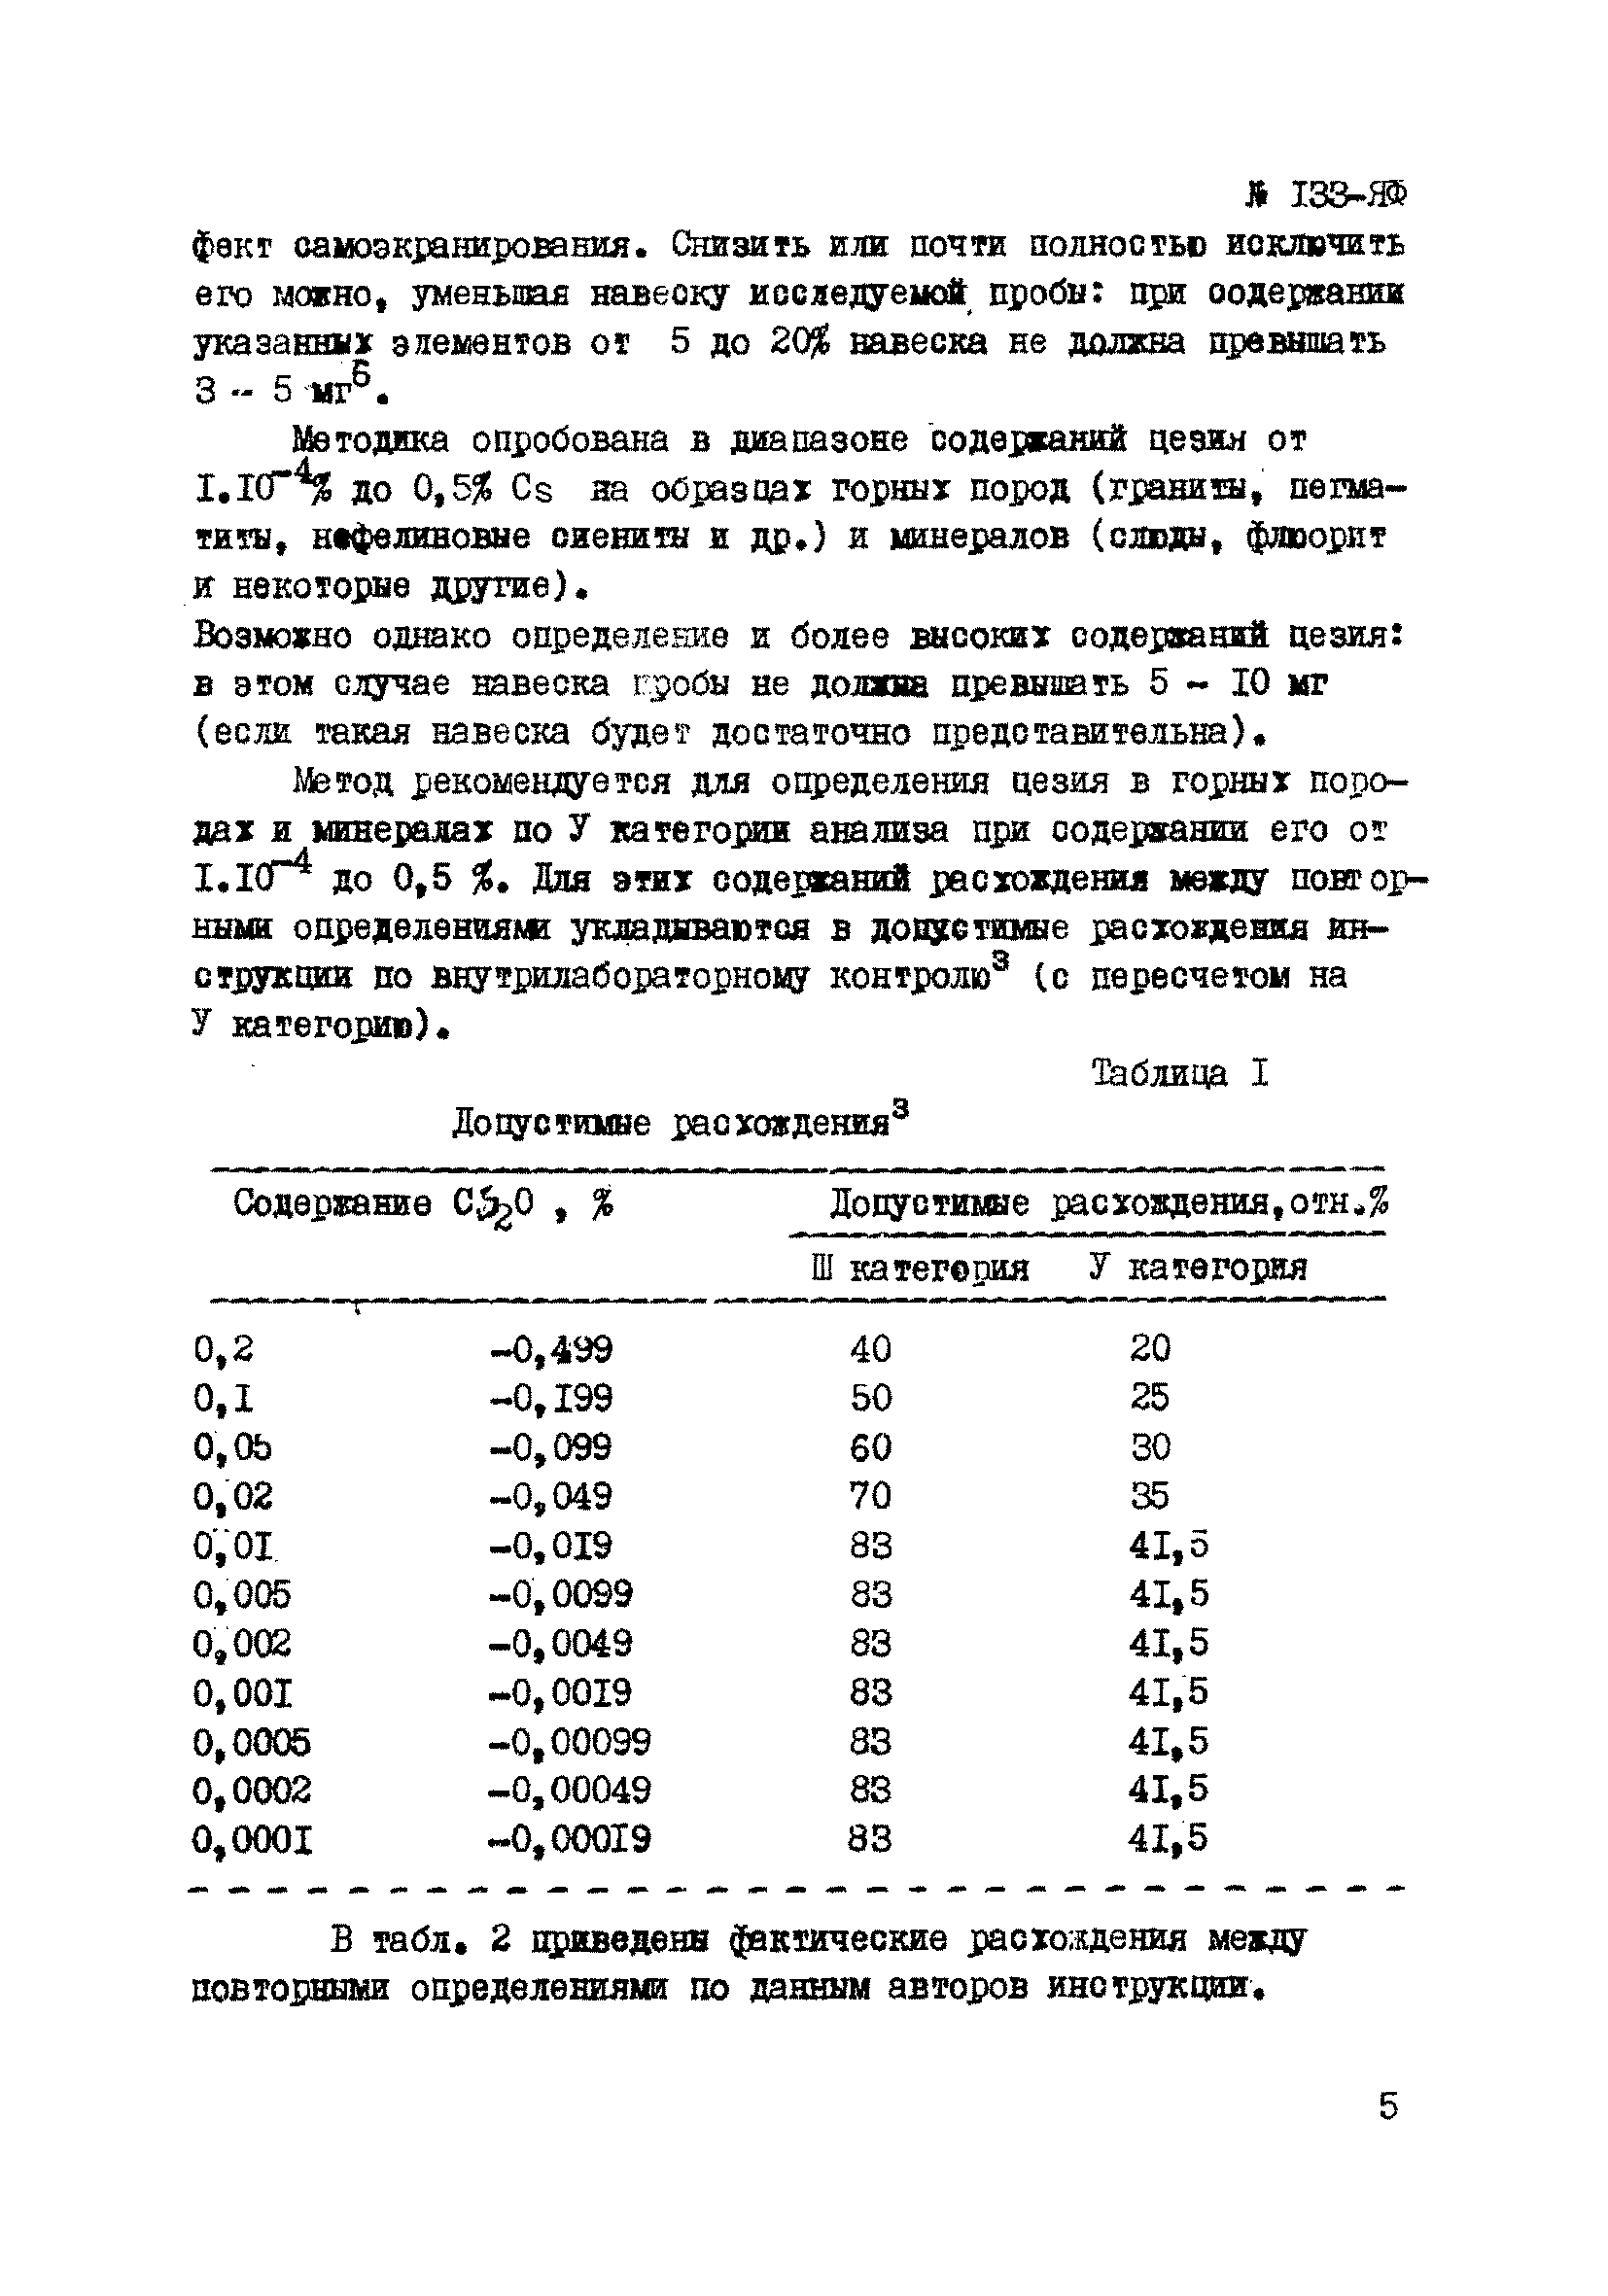 Инструкция НСАМ 133-ЯФ